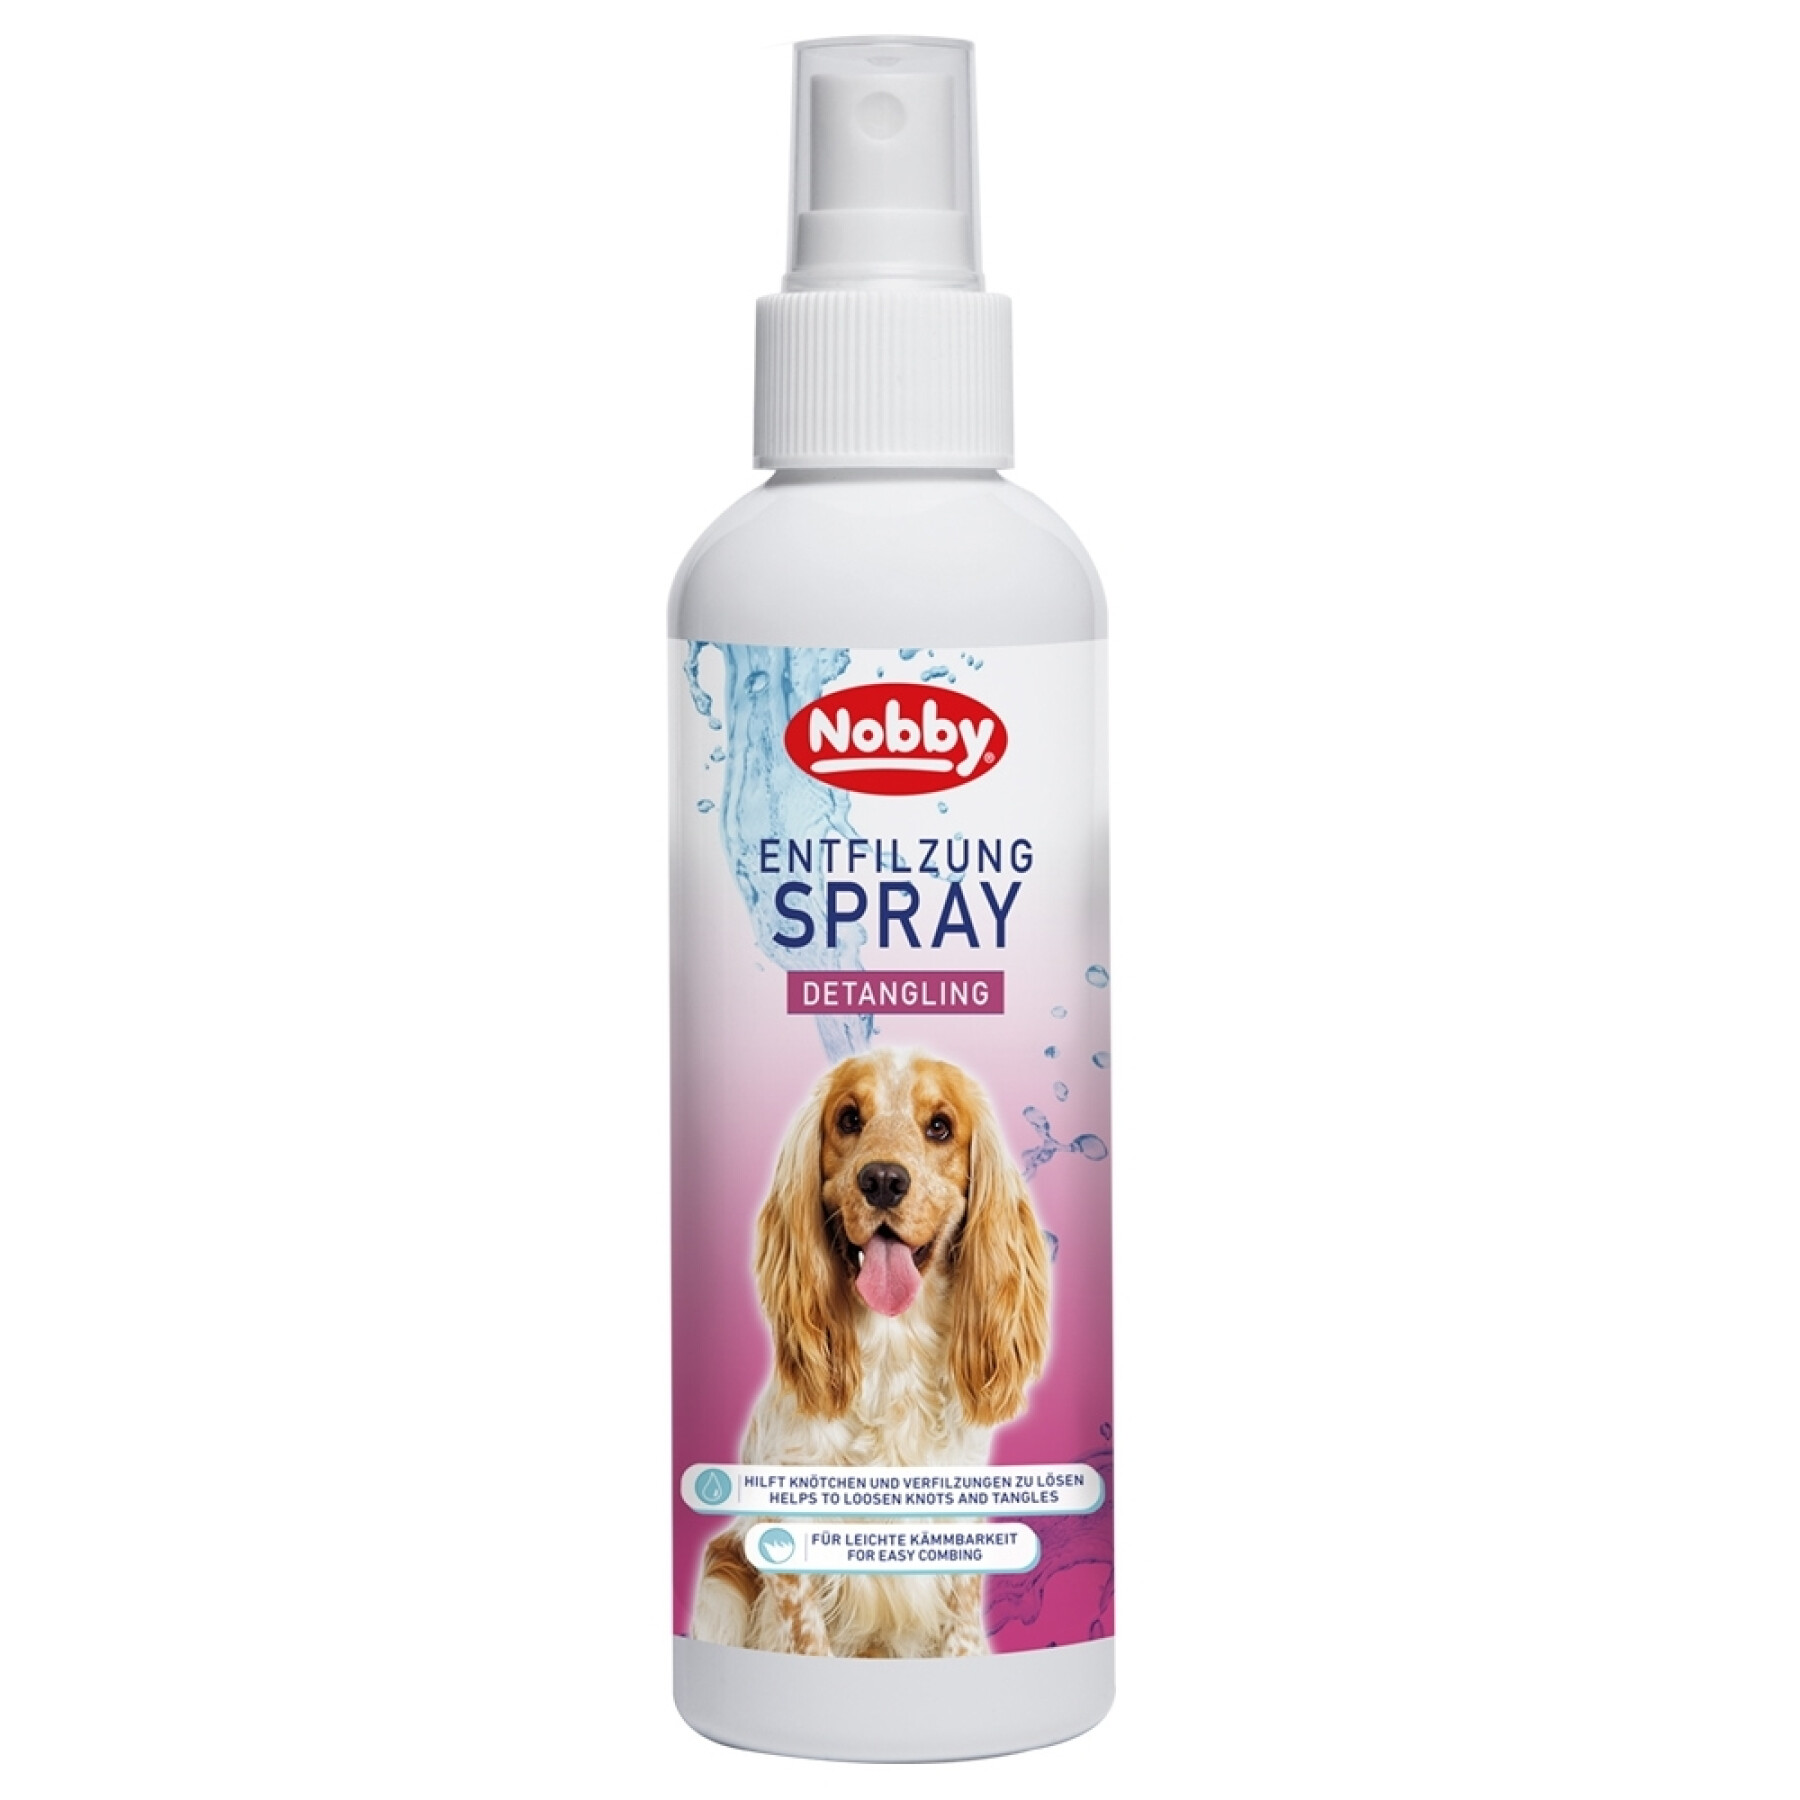 Detangling spray for dogs Nobby Pet